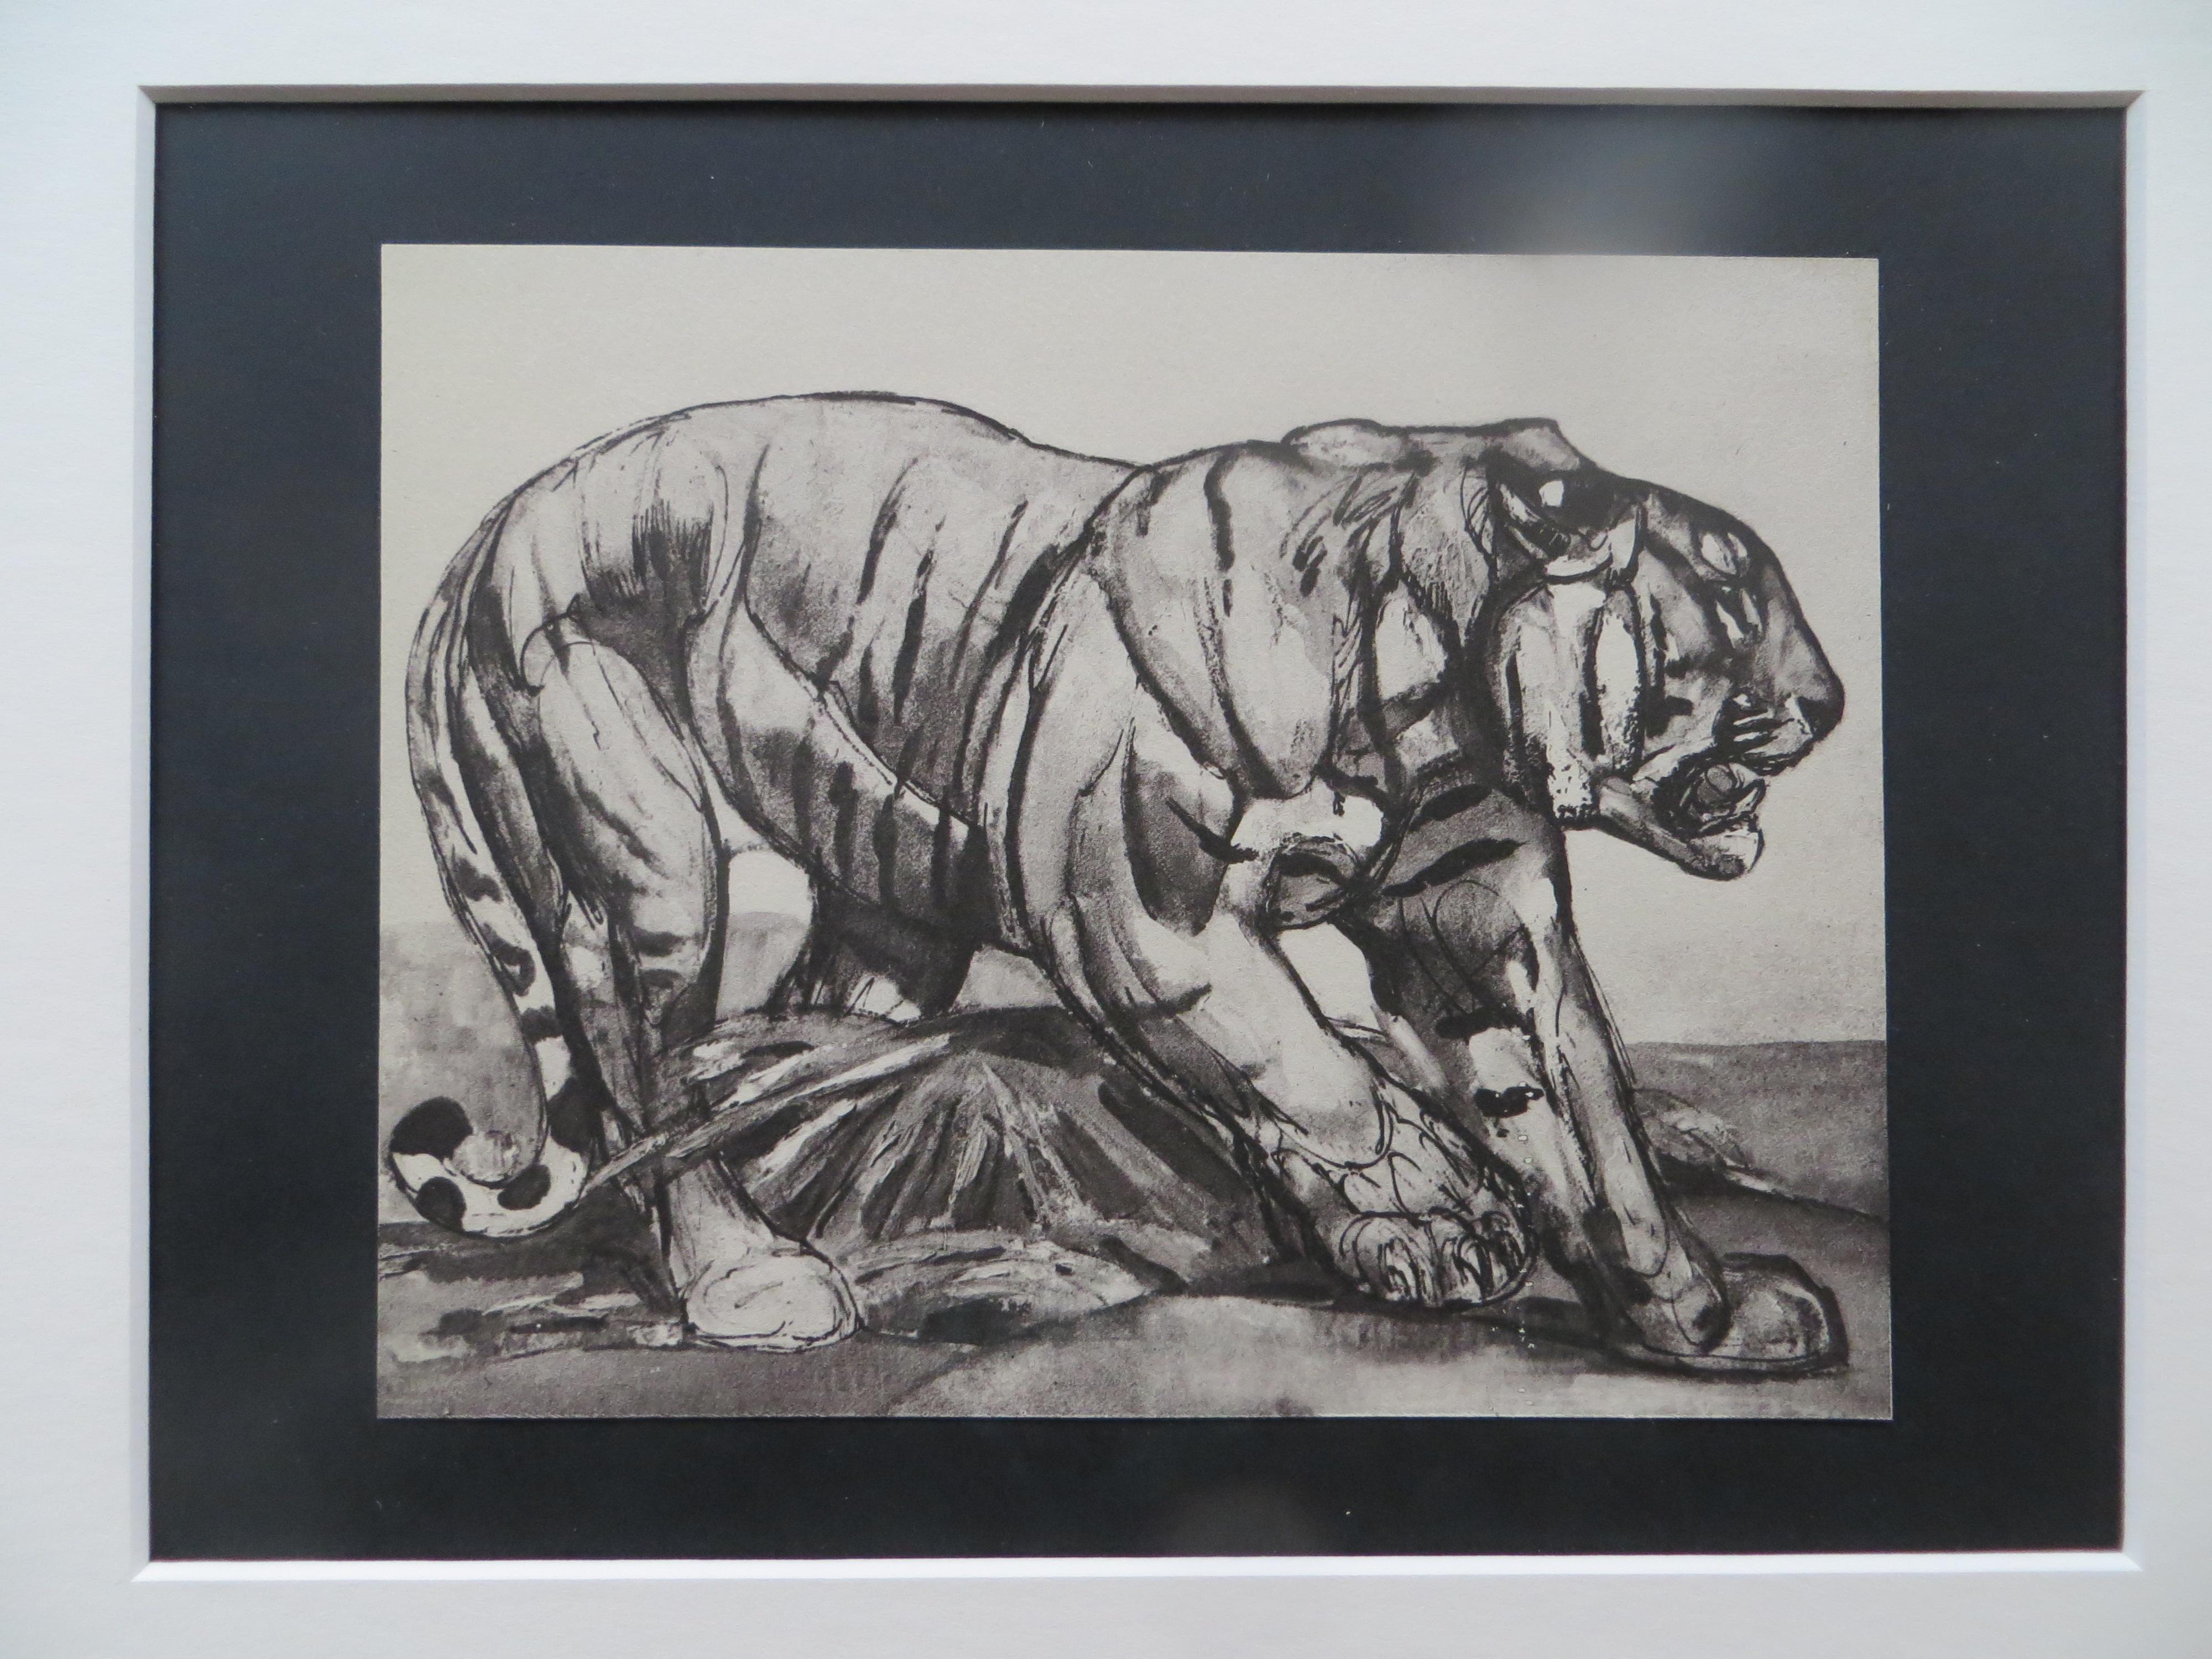 Tiger Walking, Original Lithograph Illustration by Paul Jouve, 1948 - Art Deco Print by Pierre-Paul Jouve